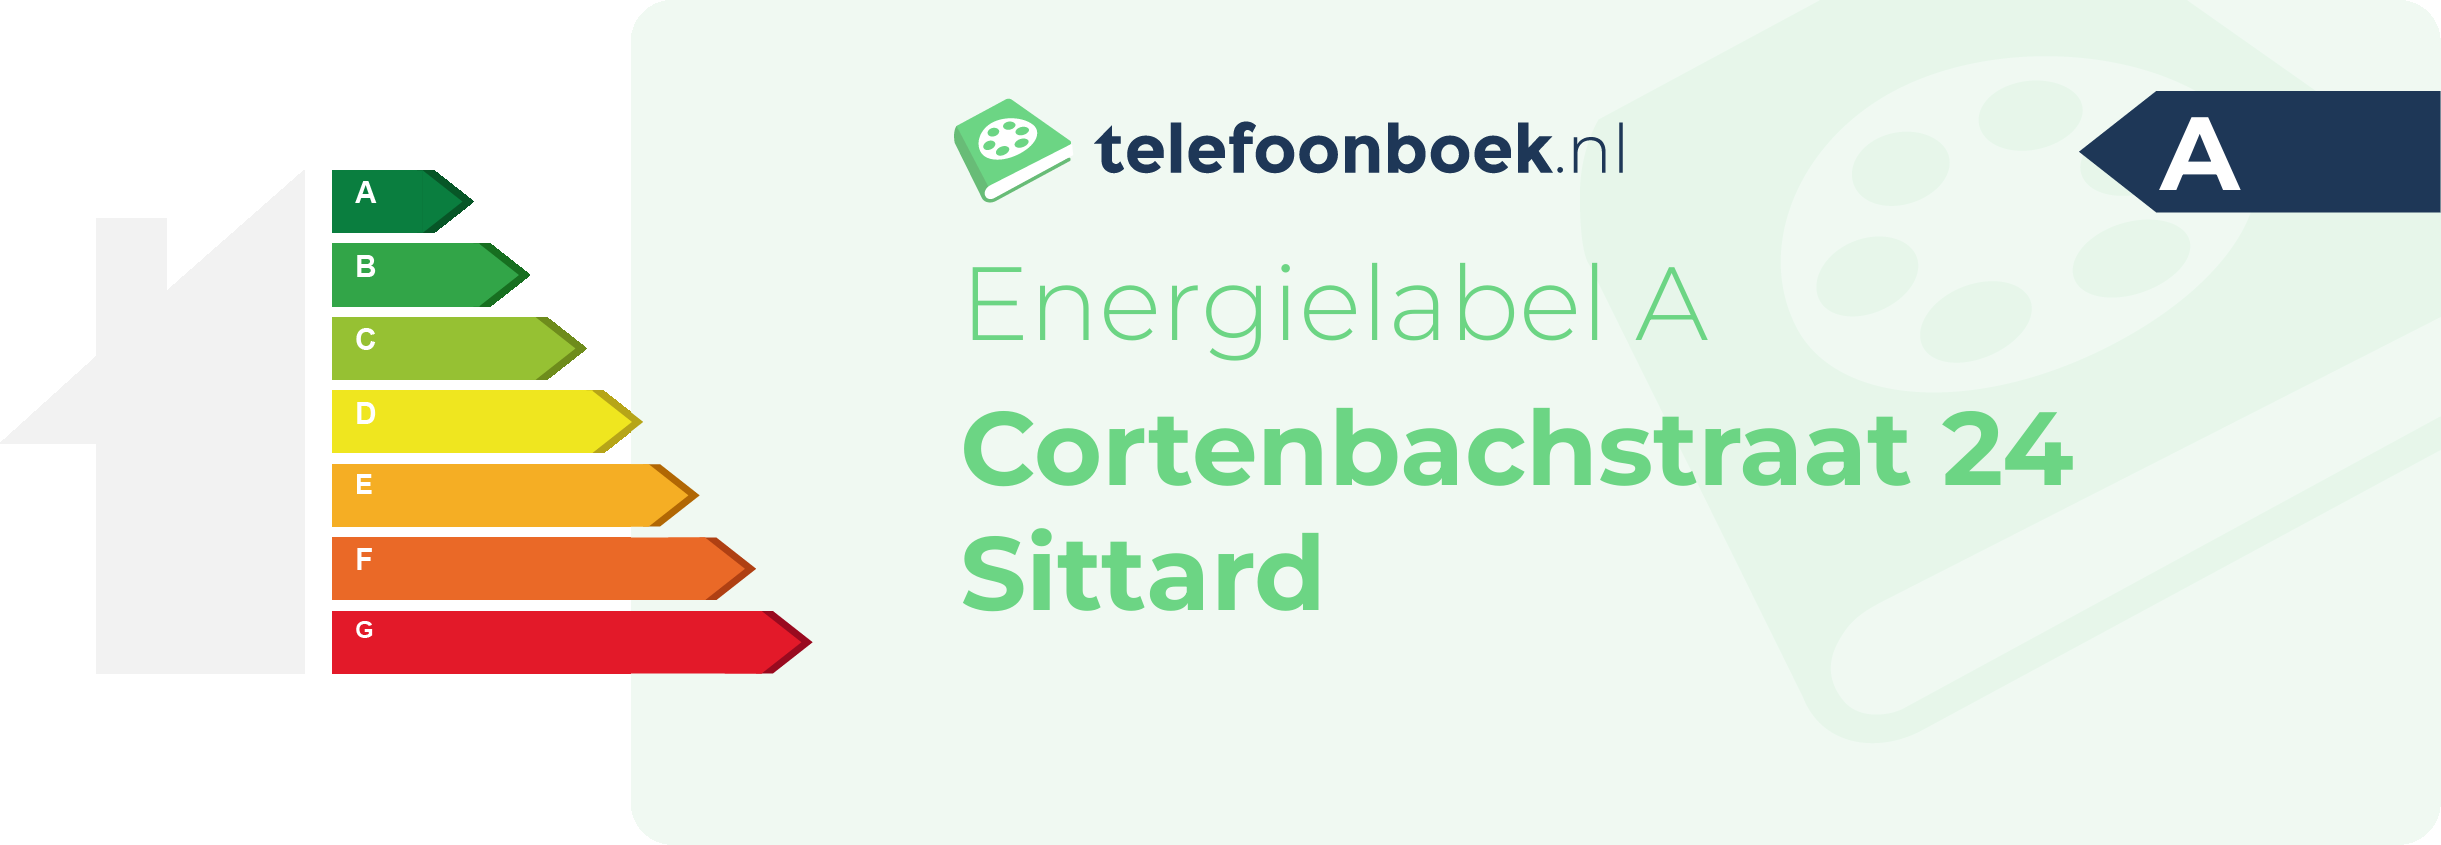 Energielabel Cortenbachstraat 24 Sittard